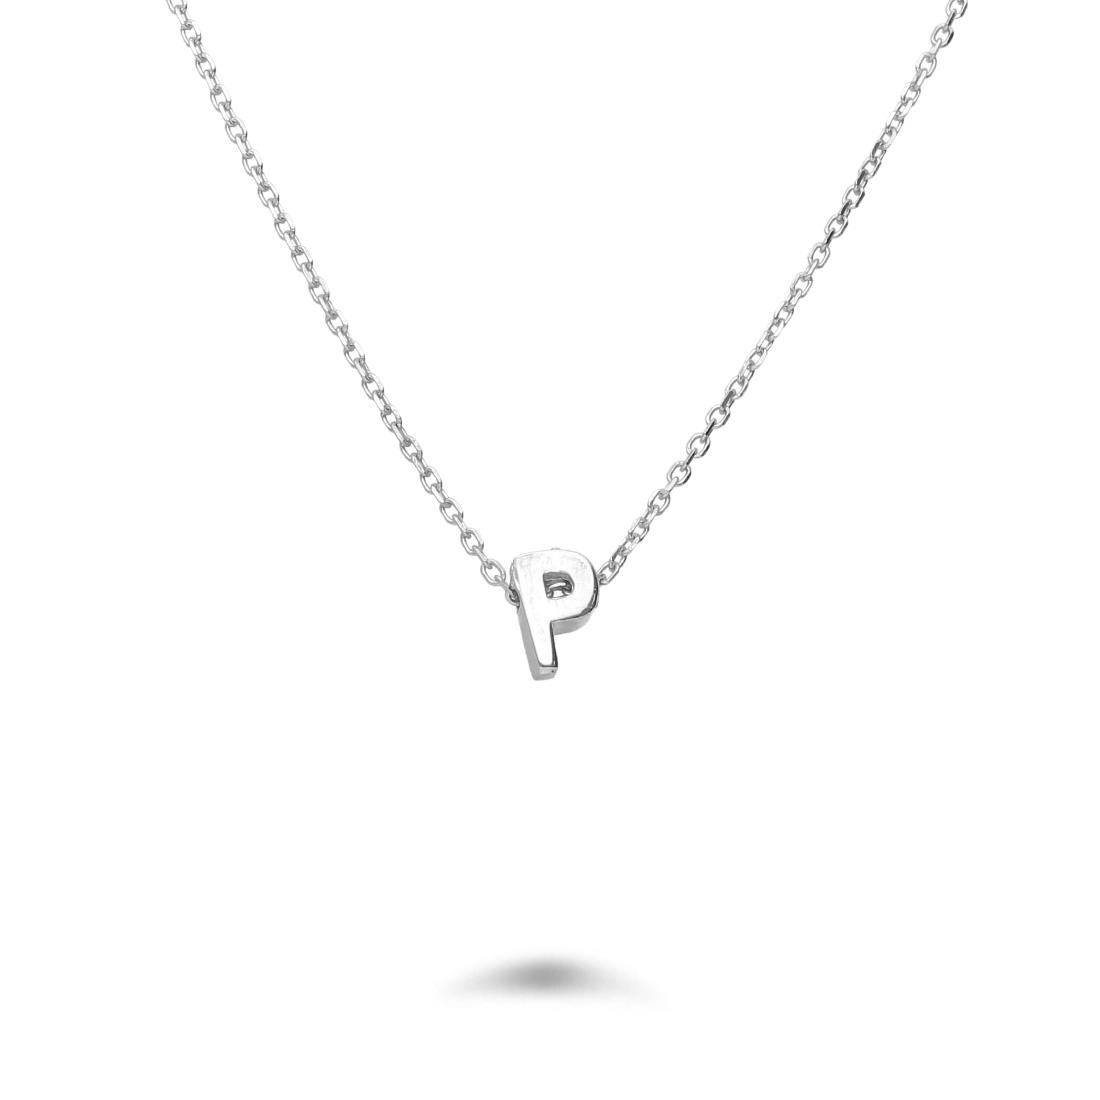 Rolò necklace in rhodium-plated silver with letter P - DESIDERI PREZIOSI